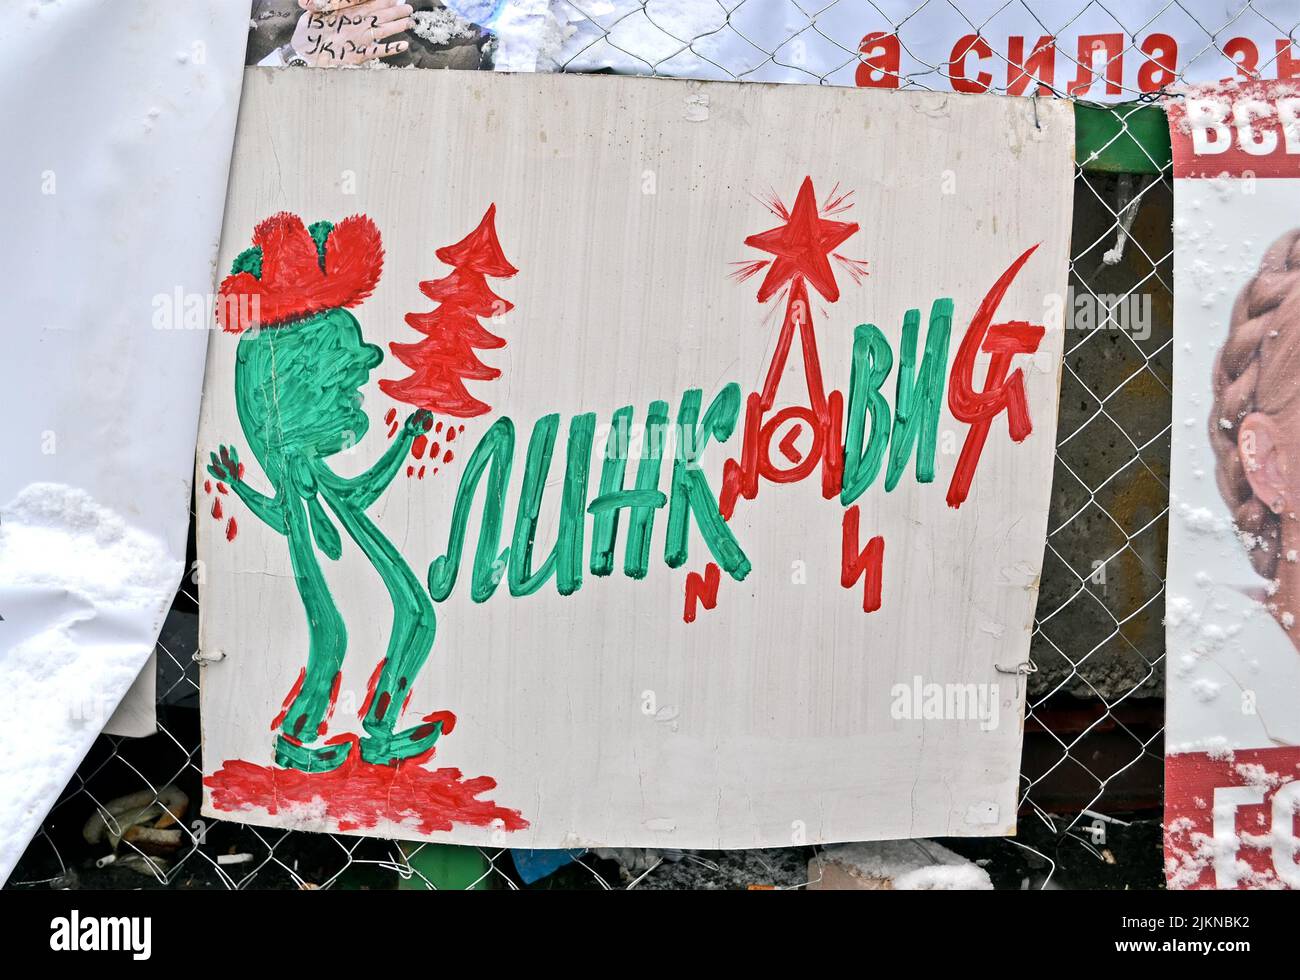 Affiche avec un arbre de sang sur la langue ukrainienne sur la réunion Euro maidan à Kiev. Réunion consacrée au déclin de la forintégration de l'Ukraine dans l'UE. Banque D'Images